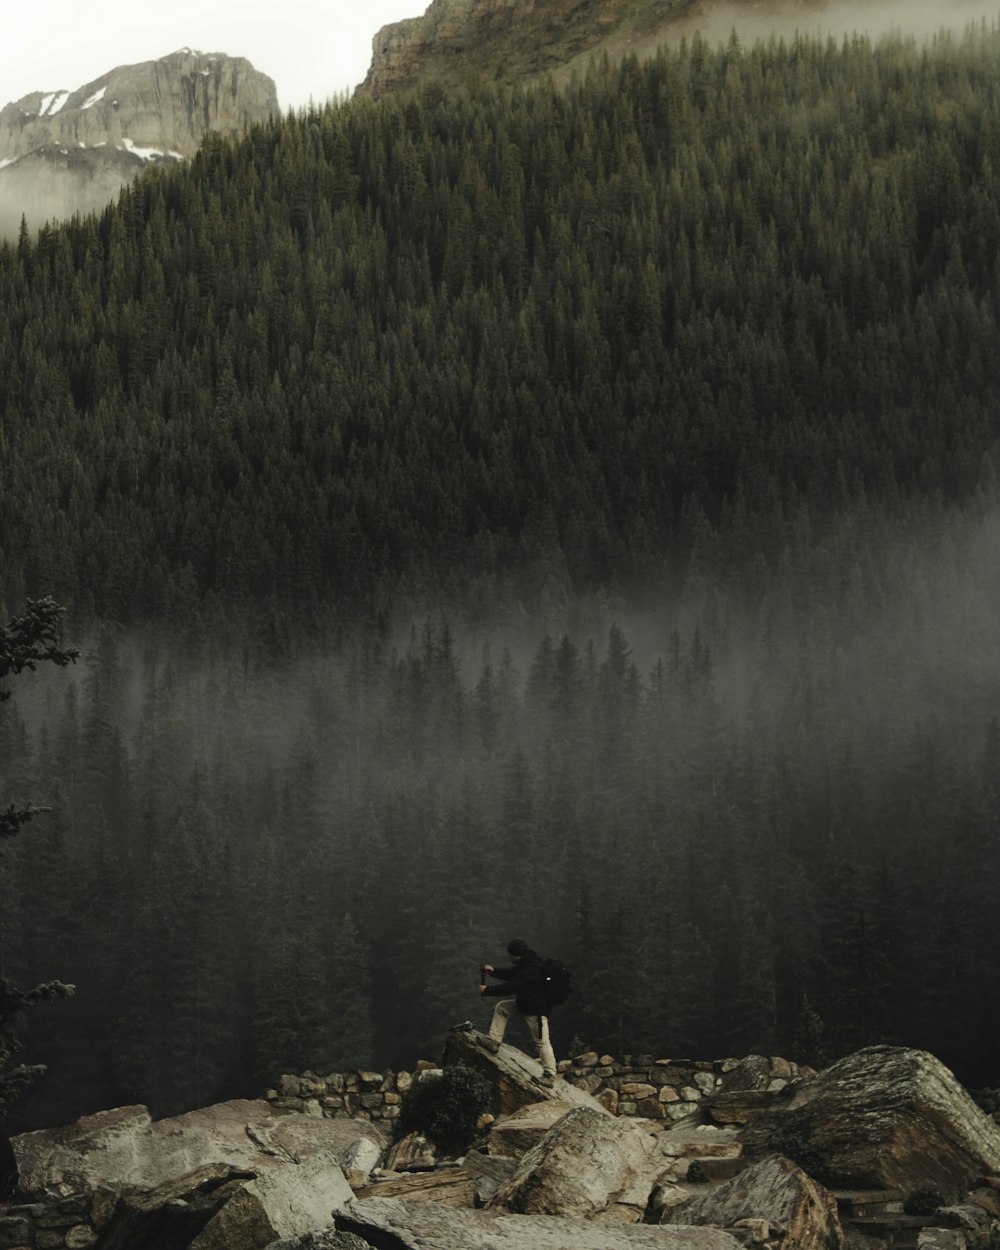 person sitting on rock near lake during daytime